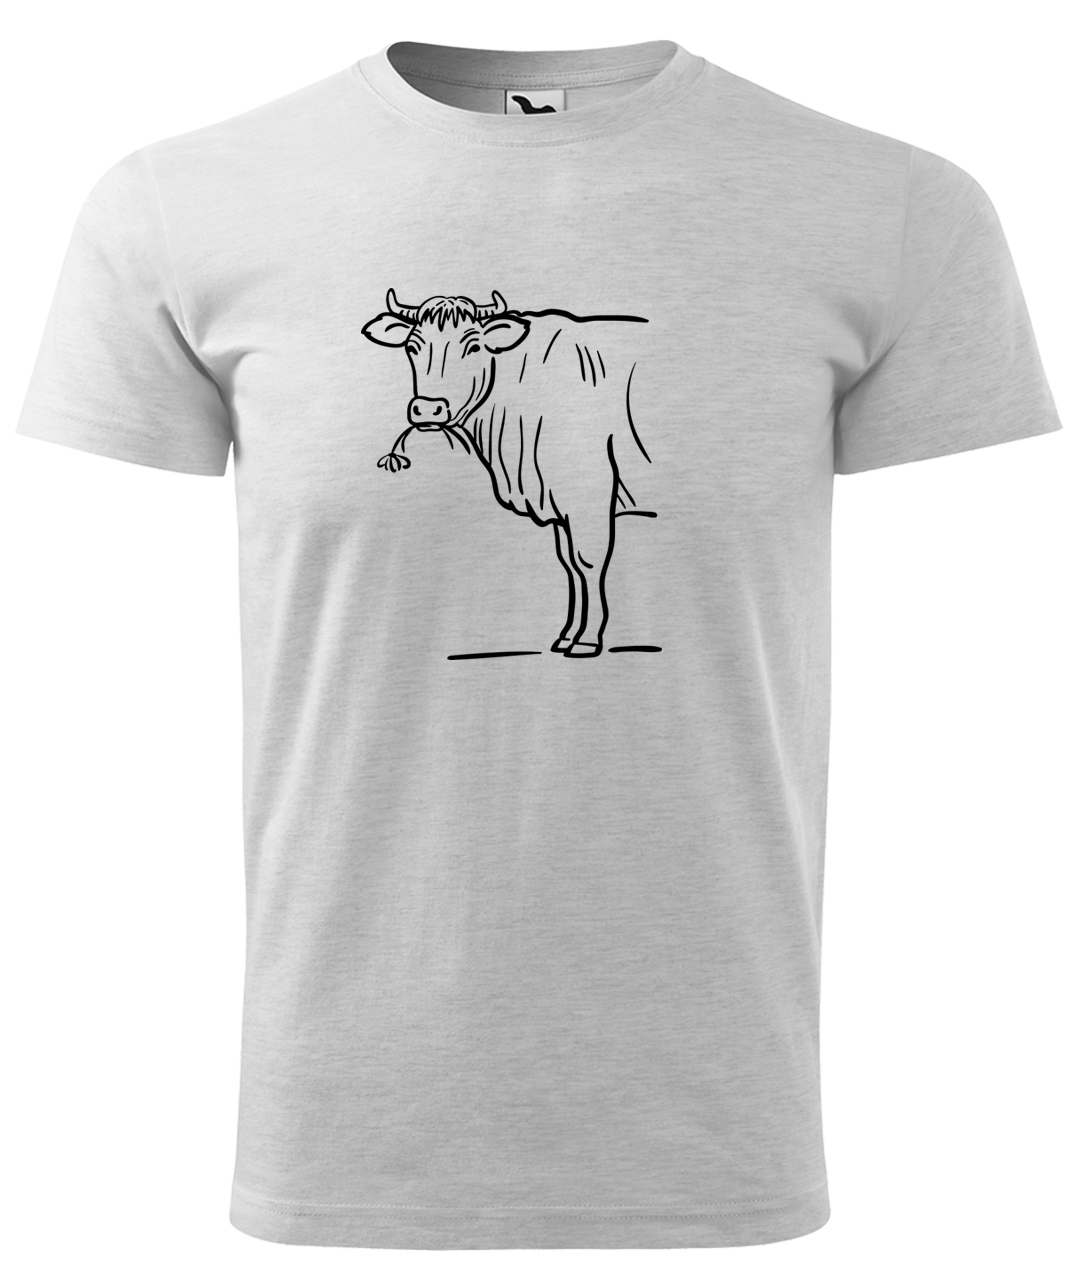 Dětské tričko s krávou - Býk Velikost: 4 roky / 110 cm, Barva: Světle šedý melír (03), Délka rukávu: Krátký rukáv